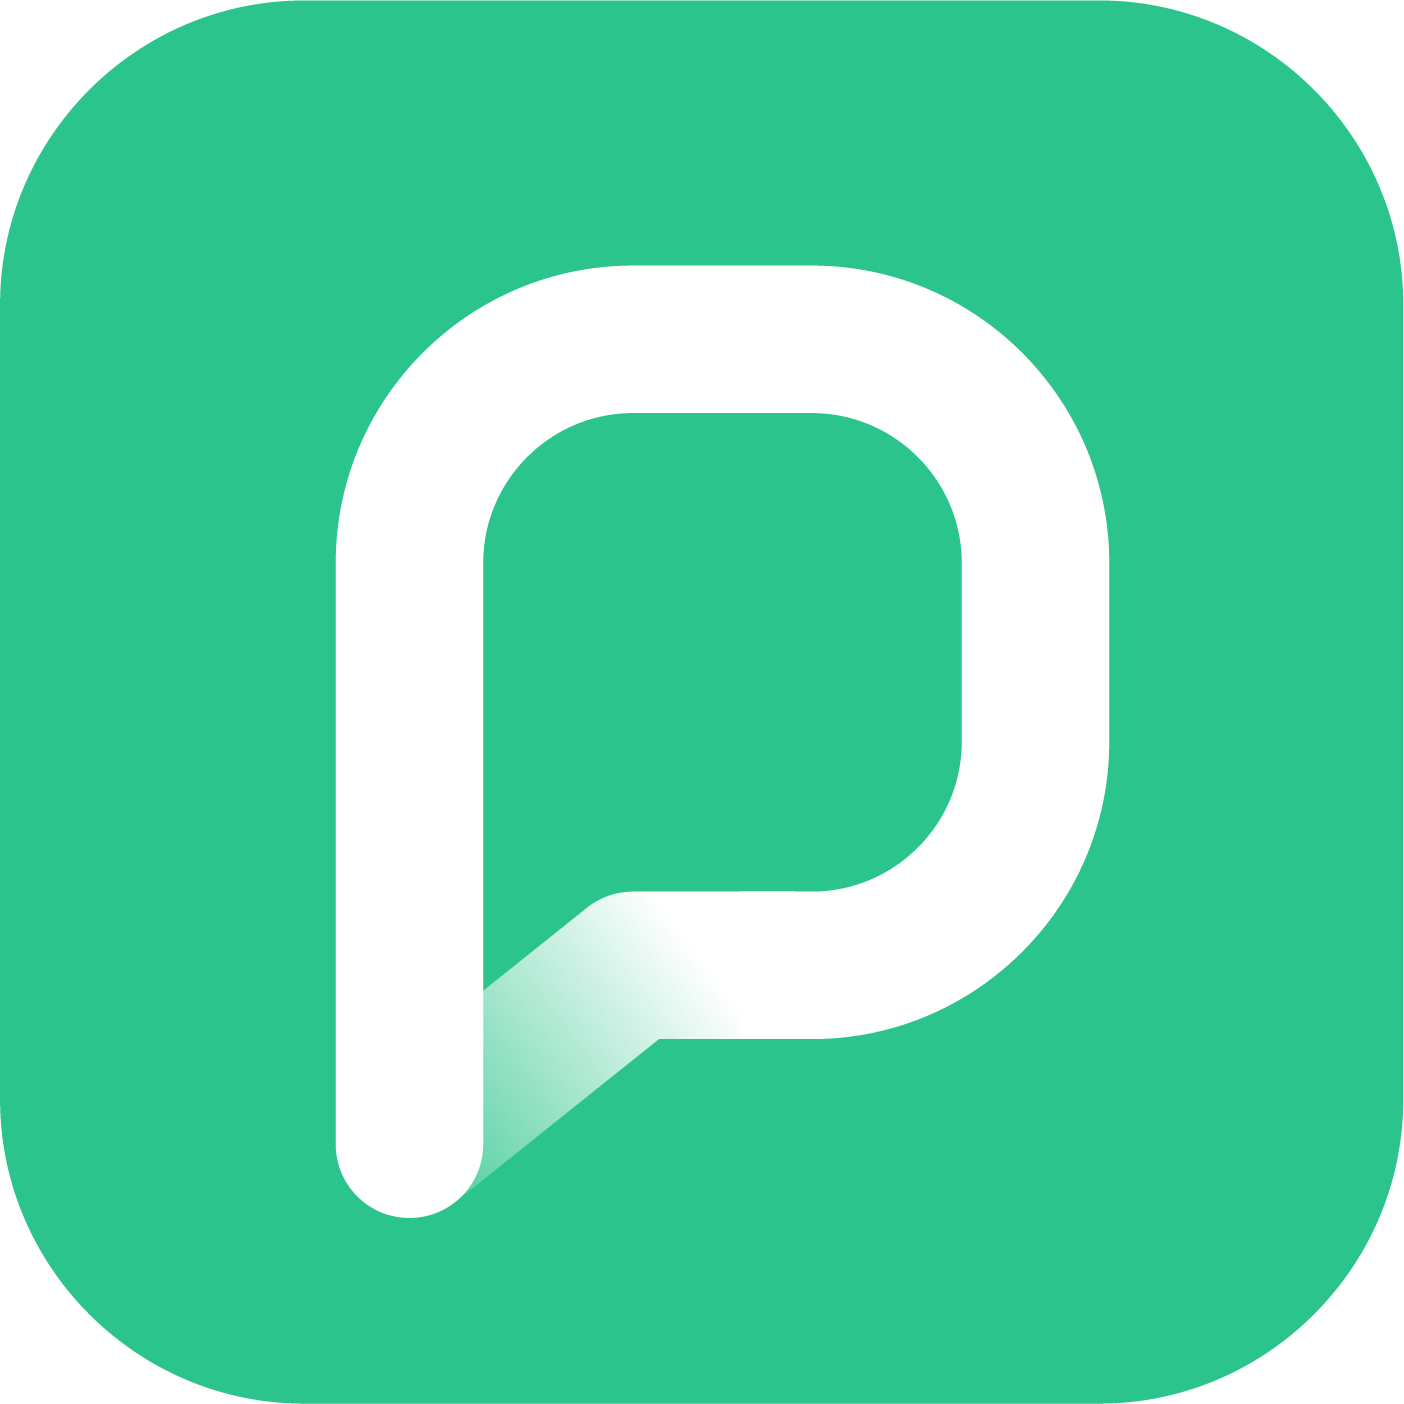 pressreader logo white p on green square